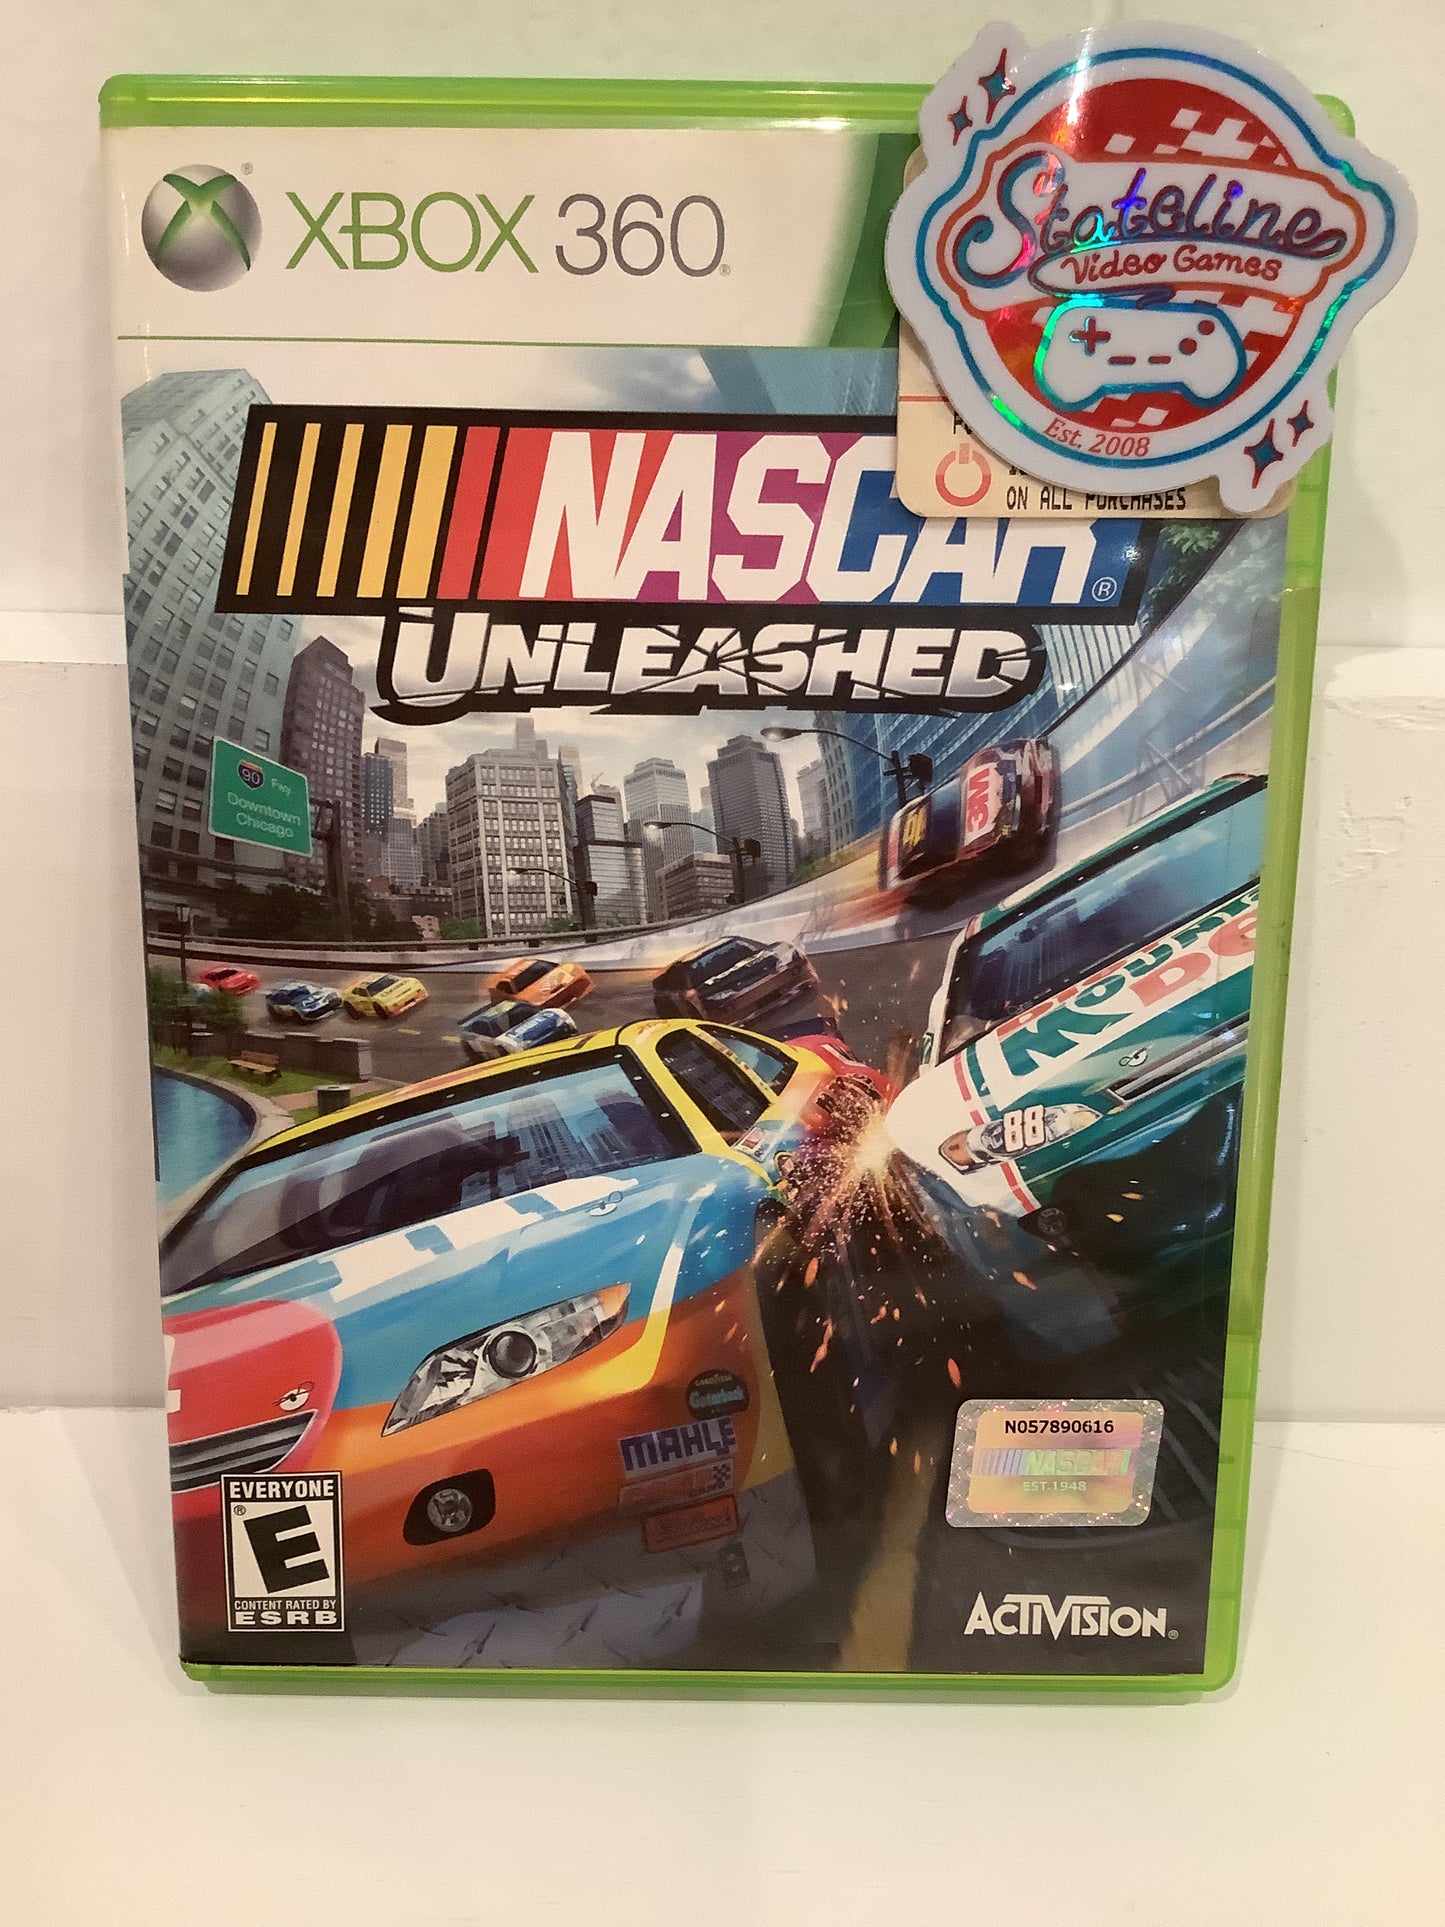 NASCAR Unleashed - Xbox 360